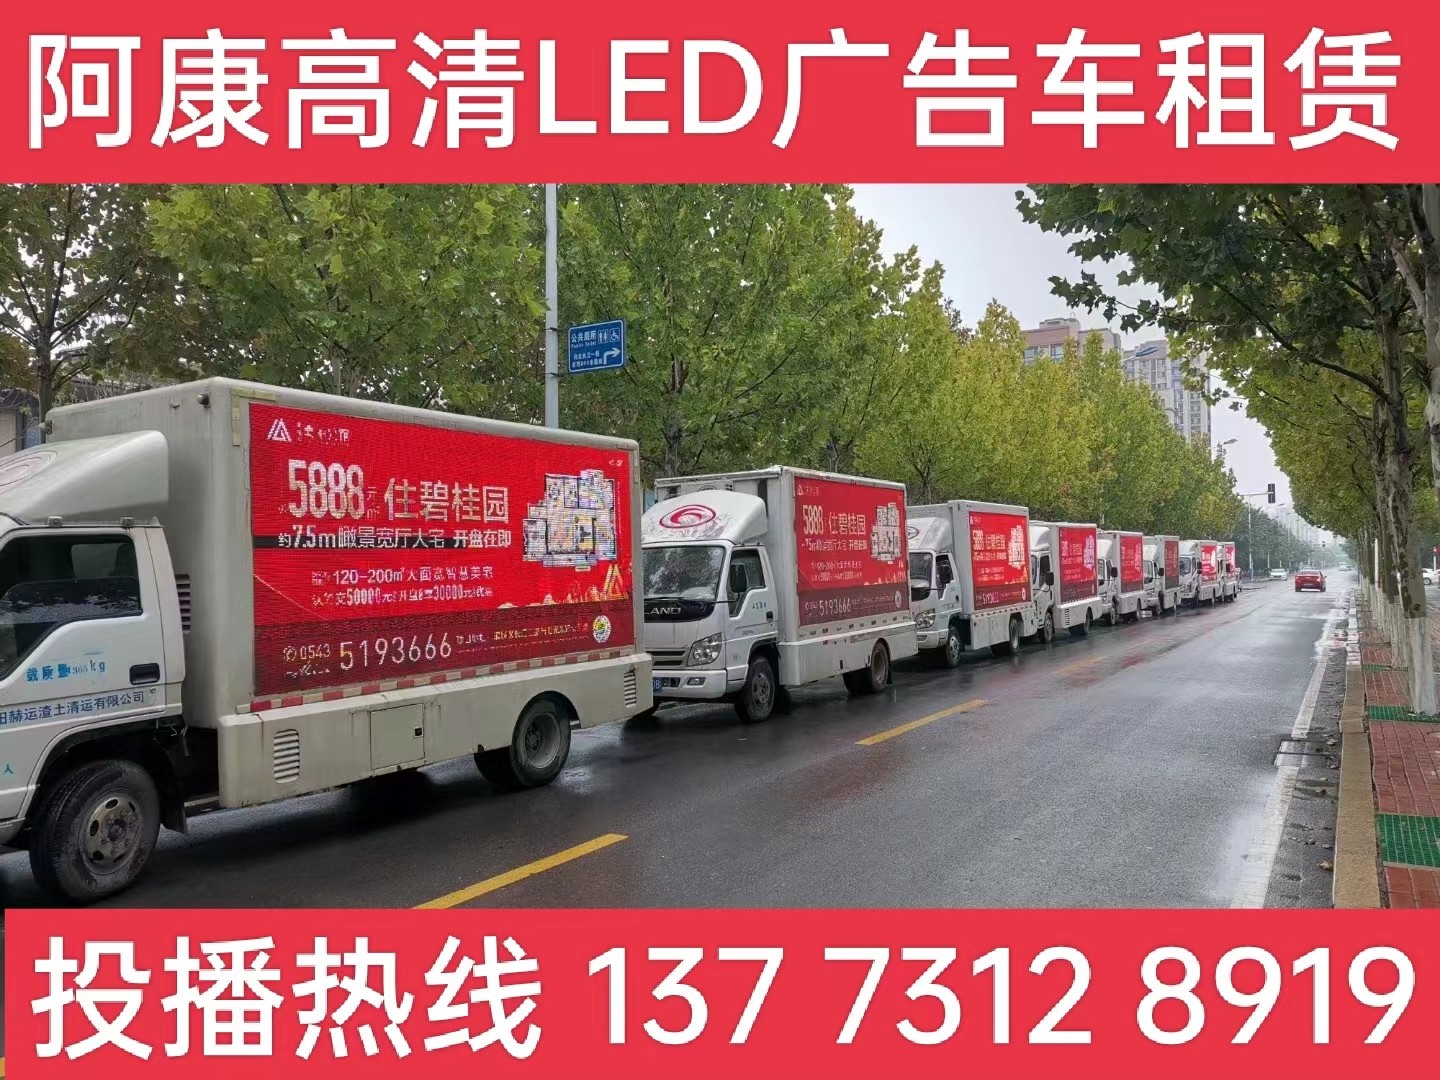 沭阳县宣传车租赁公司-楼盘LED广告车投放